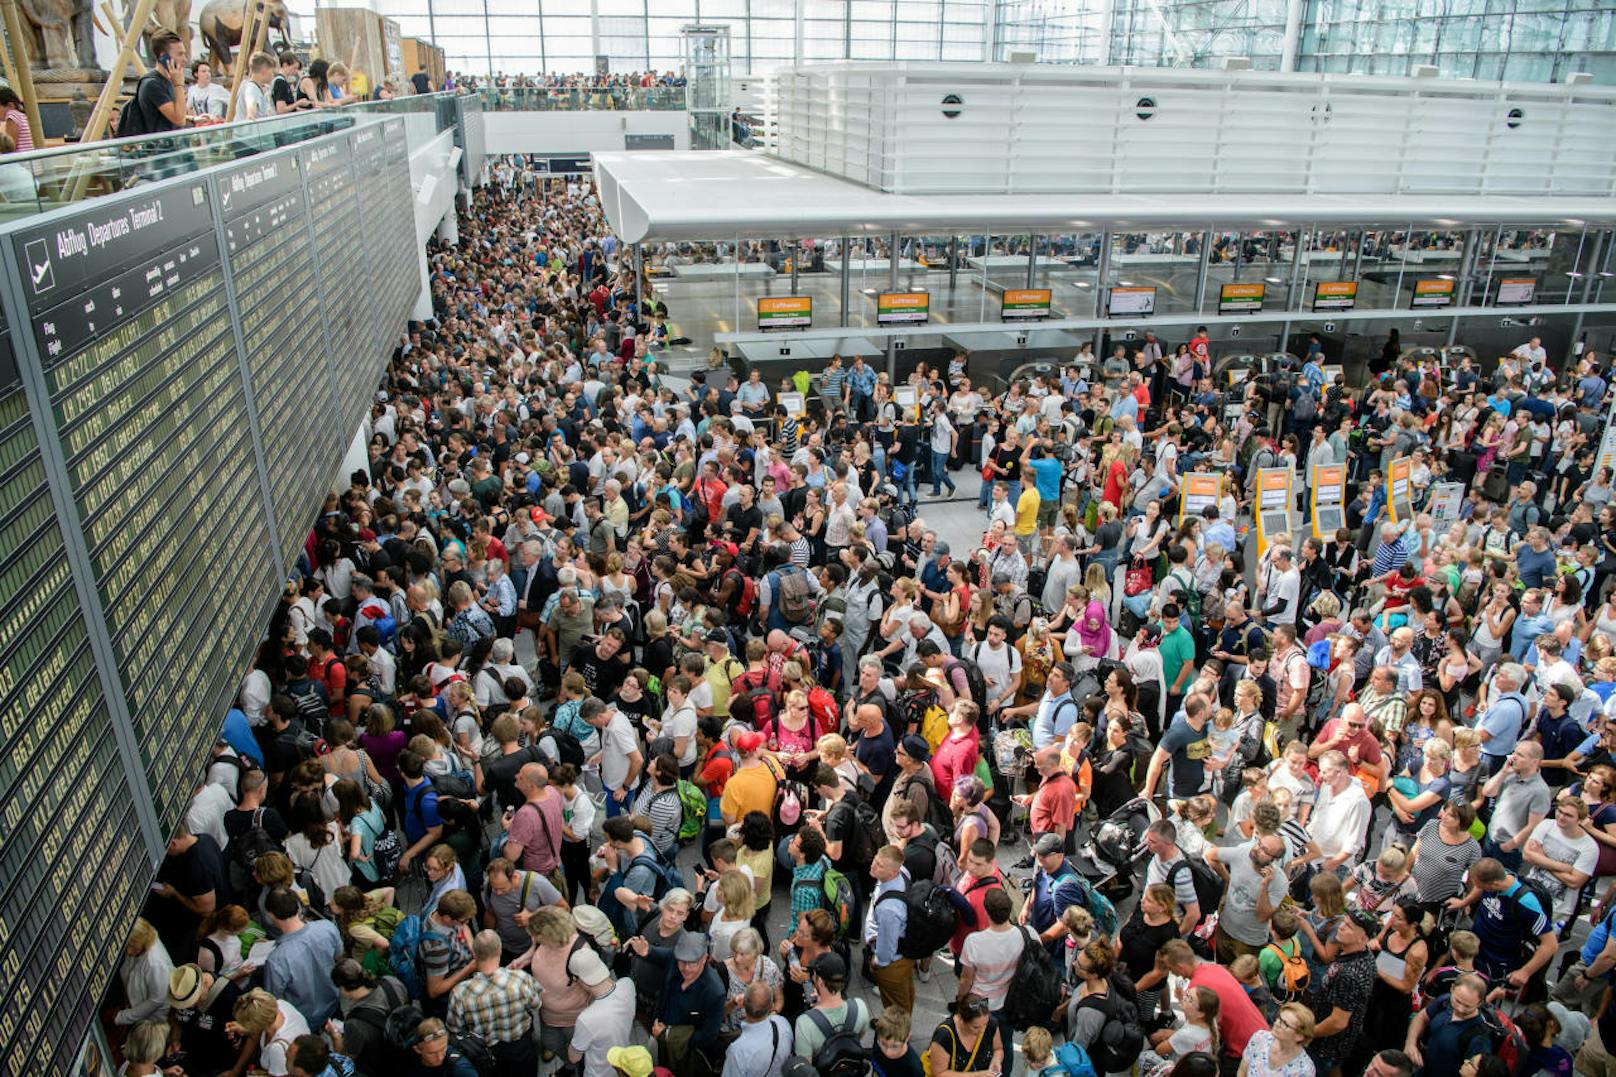 Zahlreiche Fluggäste warten am 28. Juli 2018 am Flughafen in München auf ihre Flüge. Wegen eines Polizeieinsatzes ist die Sicherheitszone im Terminal 2 vorübergehend gesperrt worden. <a href="https://www.heute.at/welt/news/story/Unkontrollierte-Person-Terminal-2-Flughafen-Muenchen-Polizeieinsatz-Verzoegerungen-41323116" target="_blank">Hier weiterlesen >>></a>